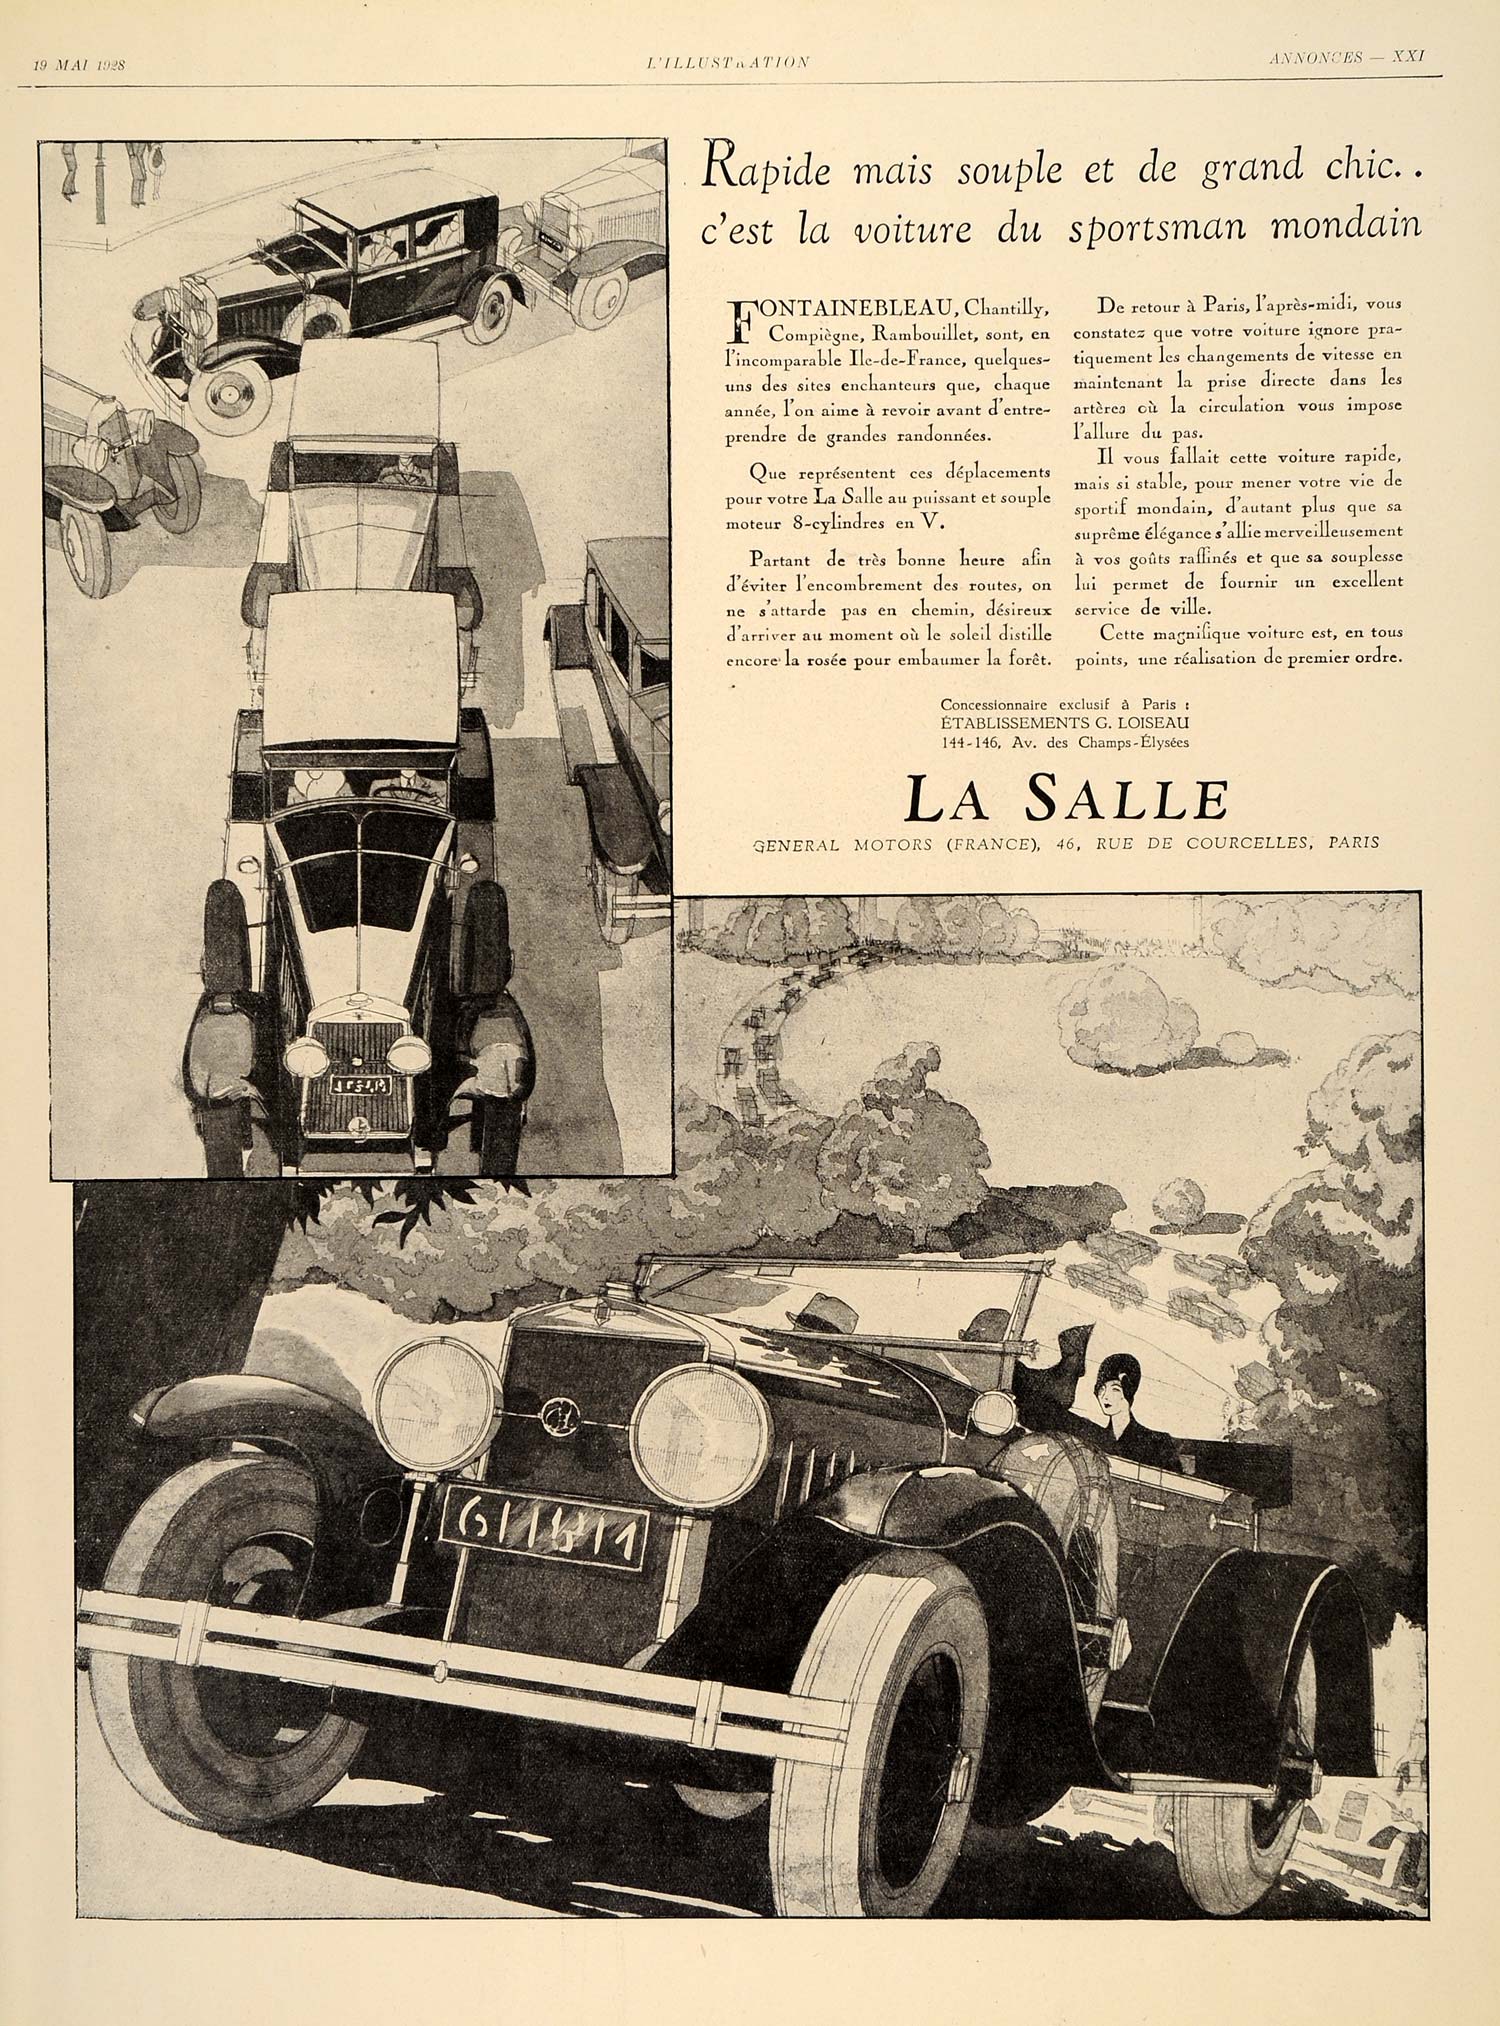 1928 Ad La Salle General Motors Cars French Automobile - ORIGINAL ILL3